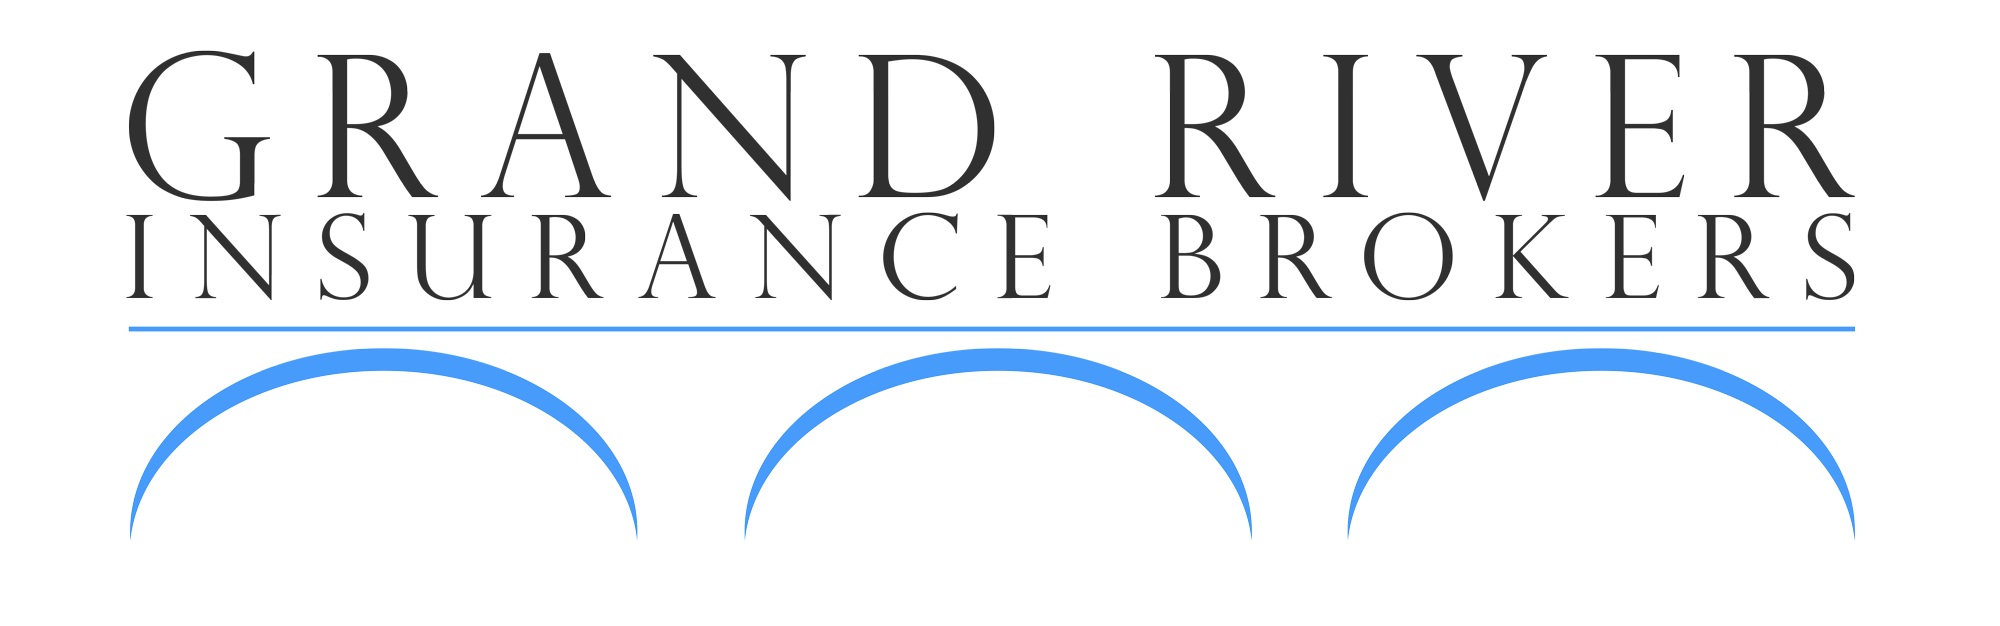 Grand River Insurance Brokers Inc.